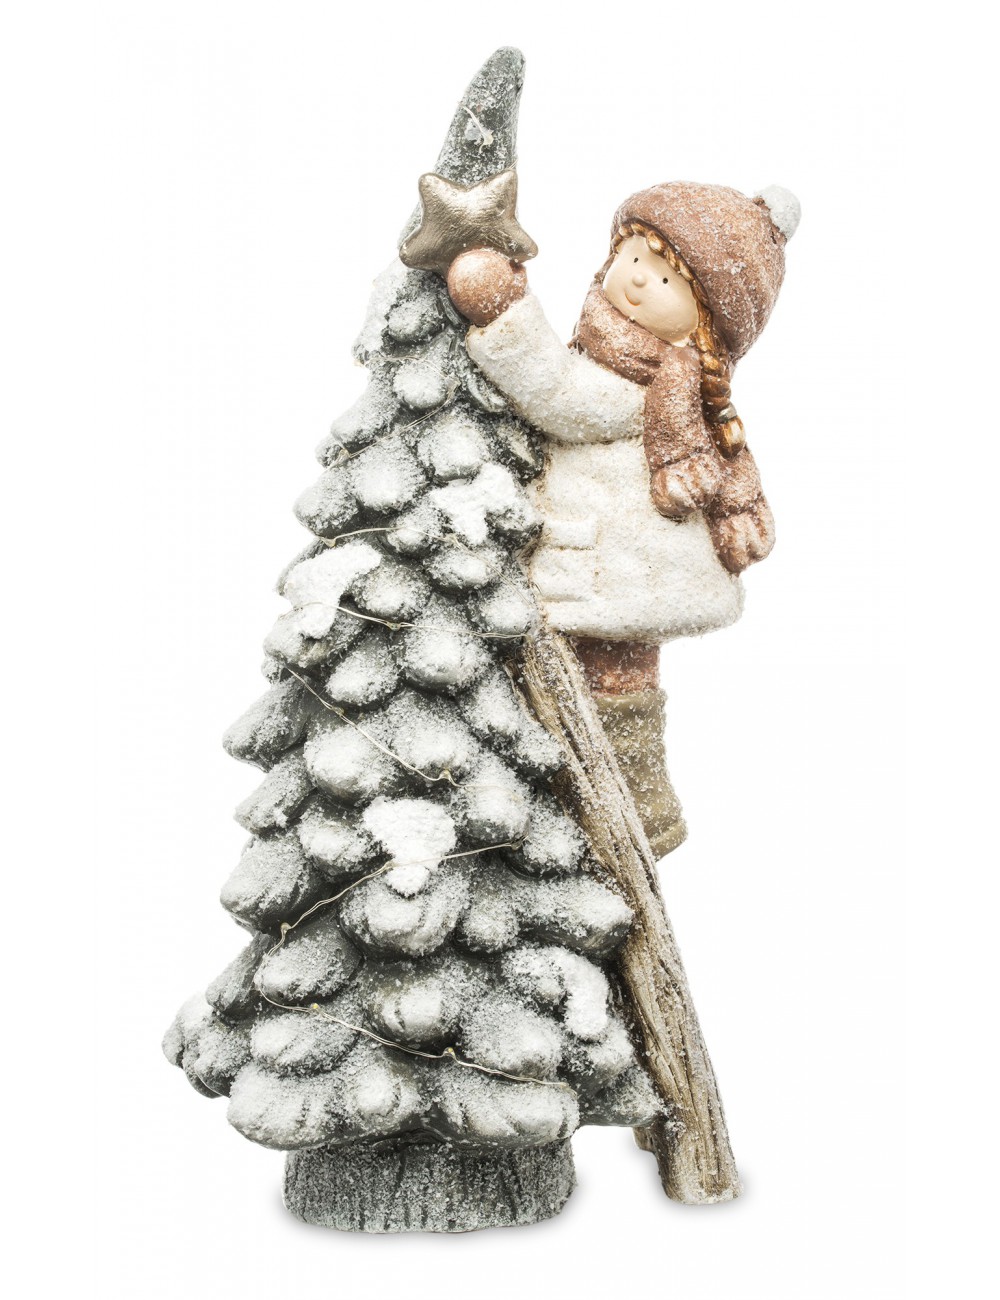 Figurka zimowa świąteczna LED DZIEWCZYNKA i świecąca CHOINKA 42x20 cm